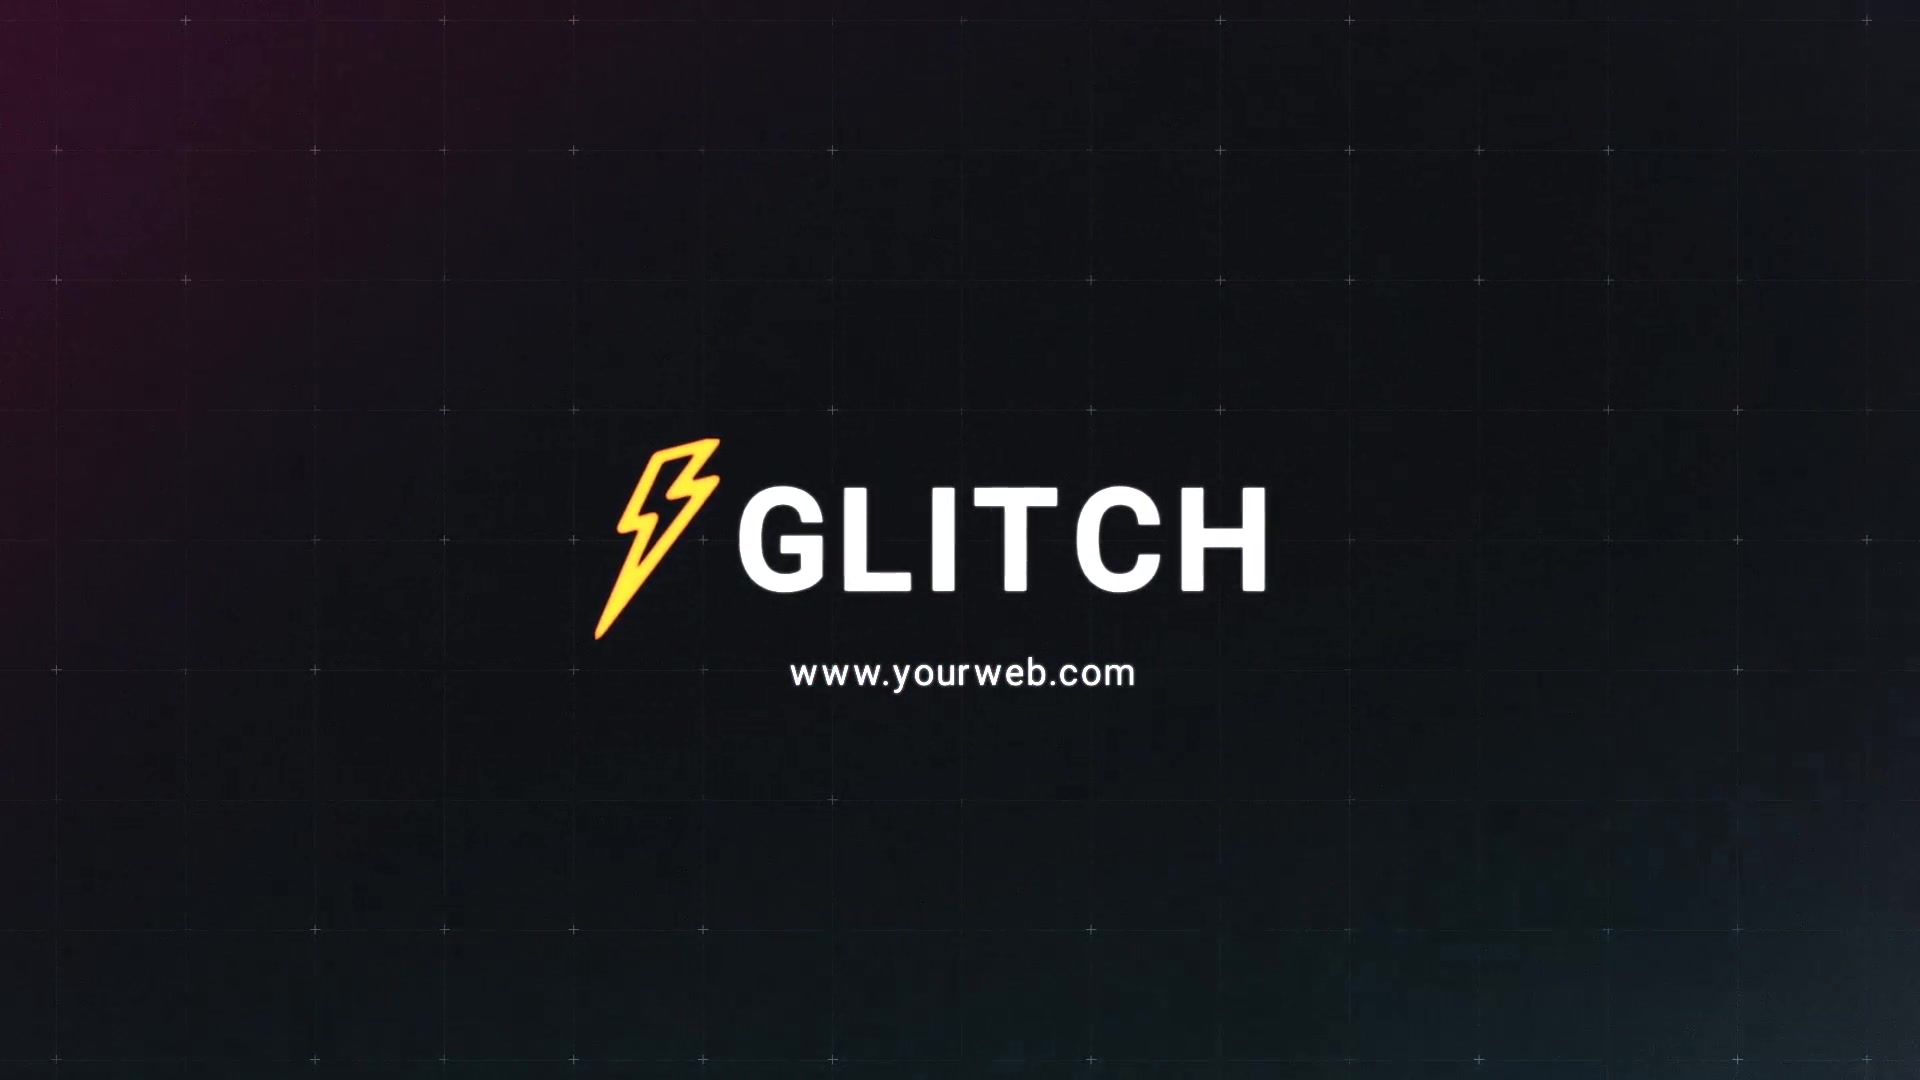 Glitch Logo Premiere Pro MOGRT Videohive 25745727 Premiere Pro Image 6